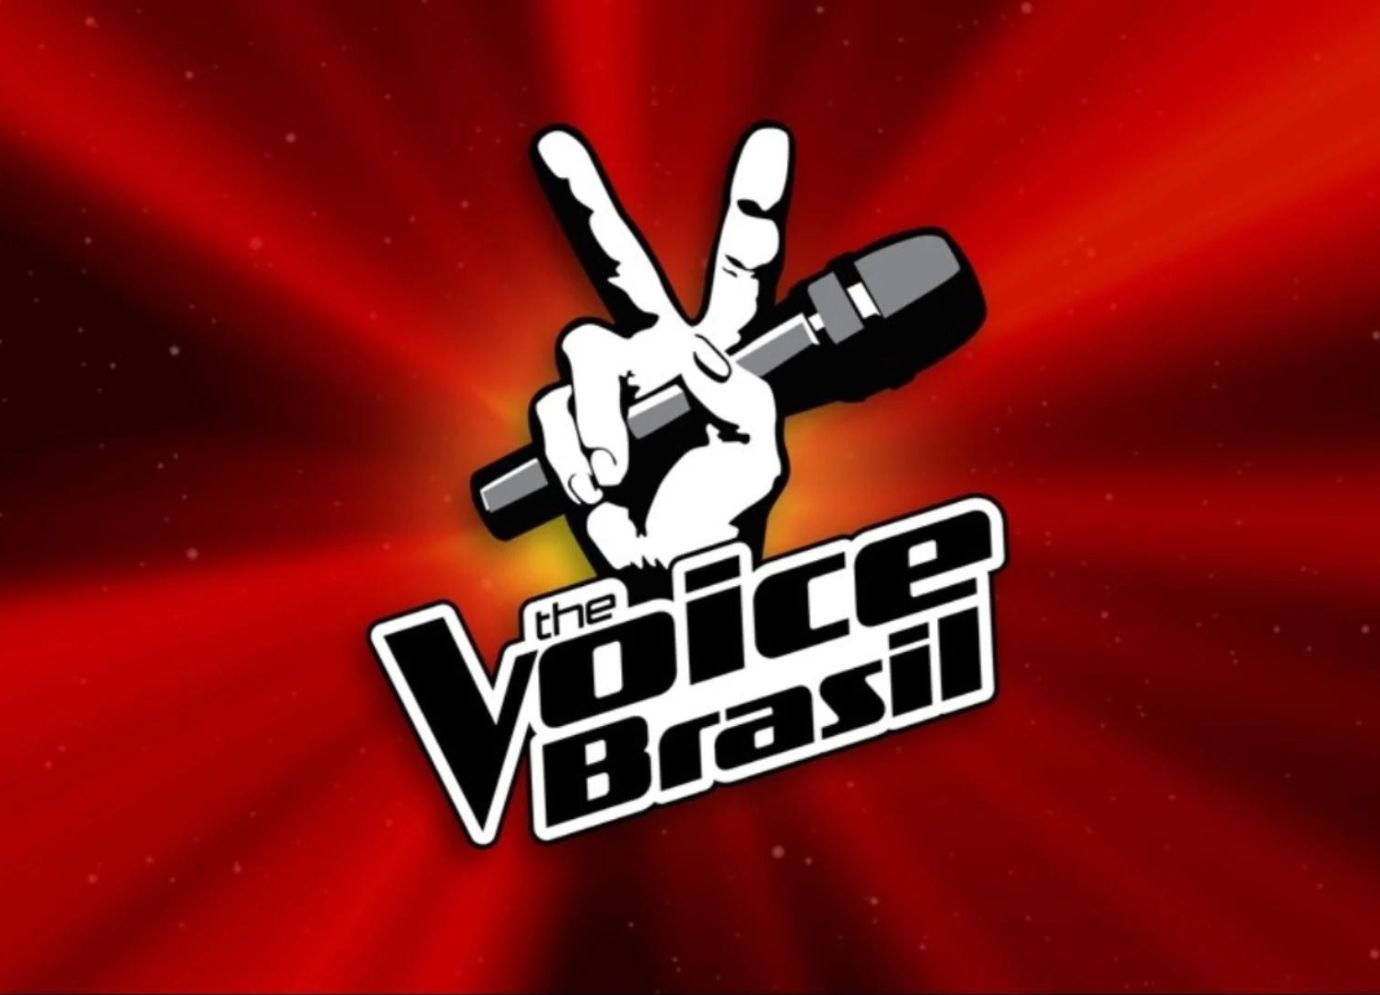 Se você canta bem precisa conhecer este programa! Fonte: The Voice Brasil.